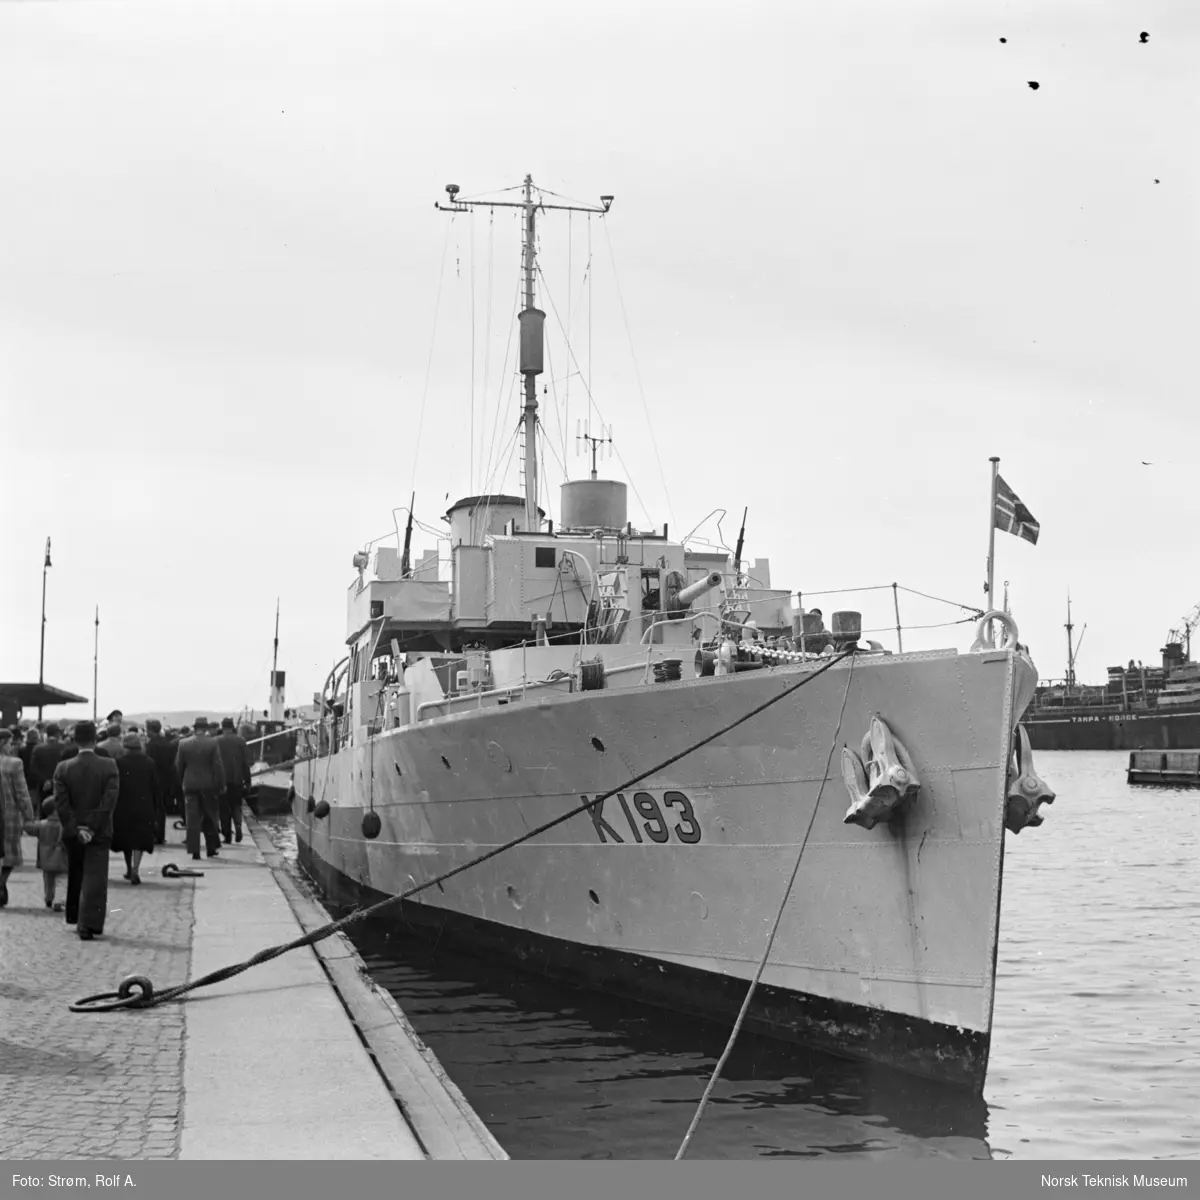 Marineskipet, korvetten HMS Buttercup, merket K-193, ved havn, tilskuere, Oslo mai 1945.